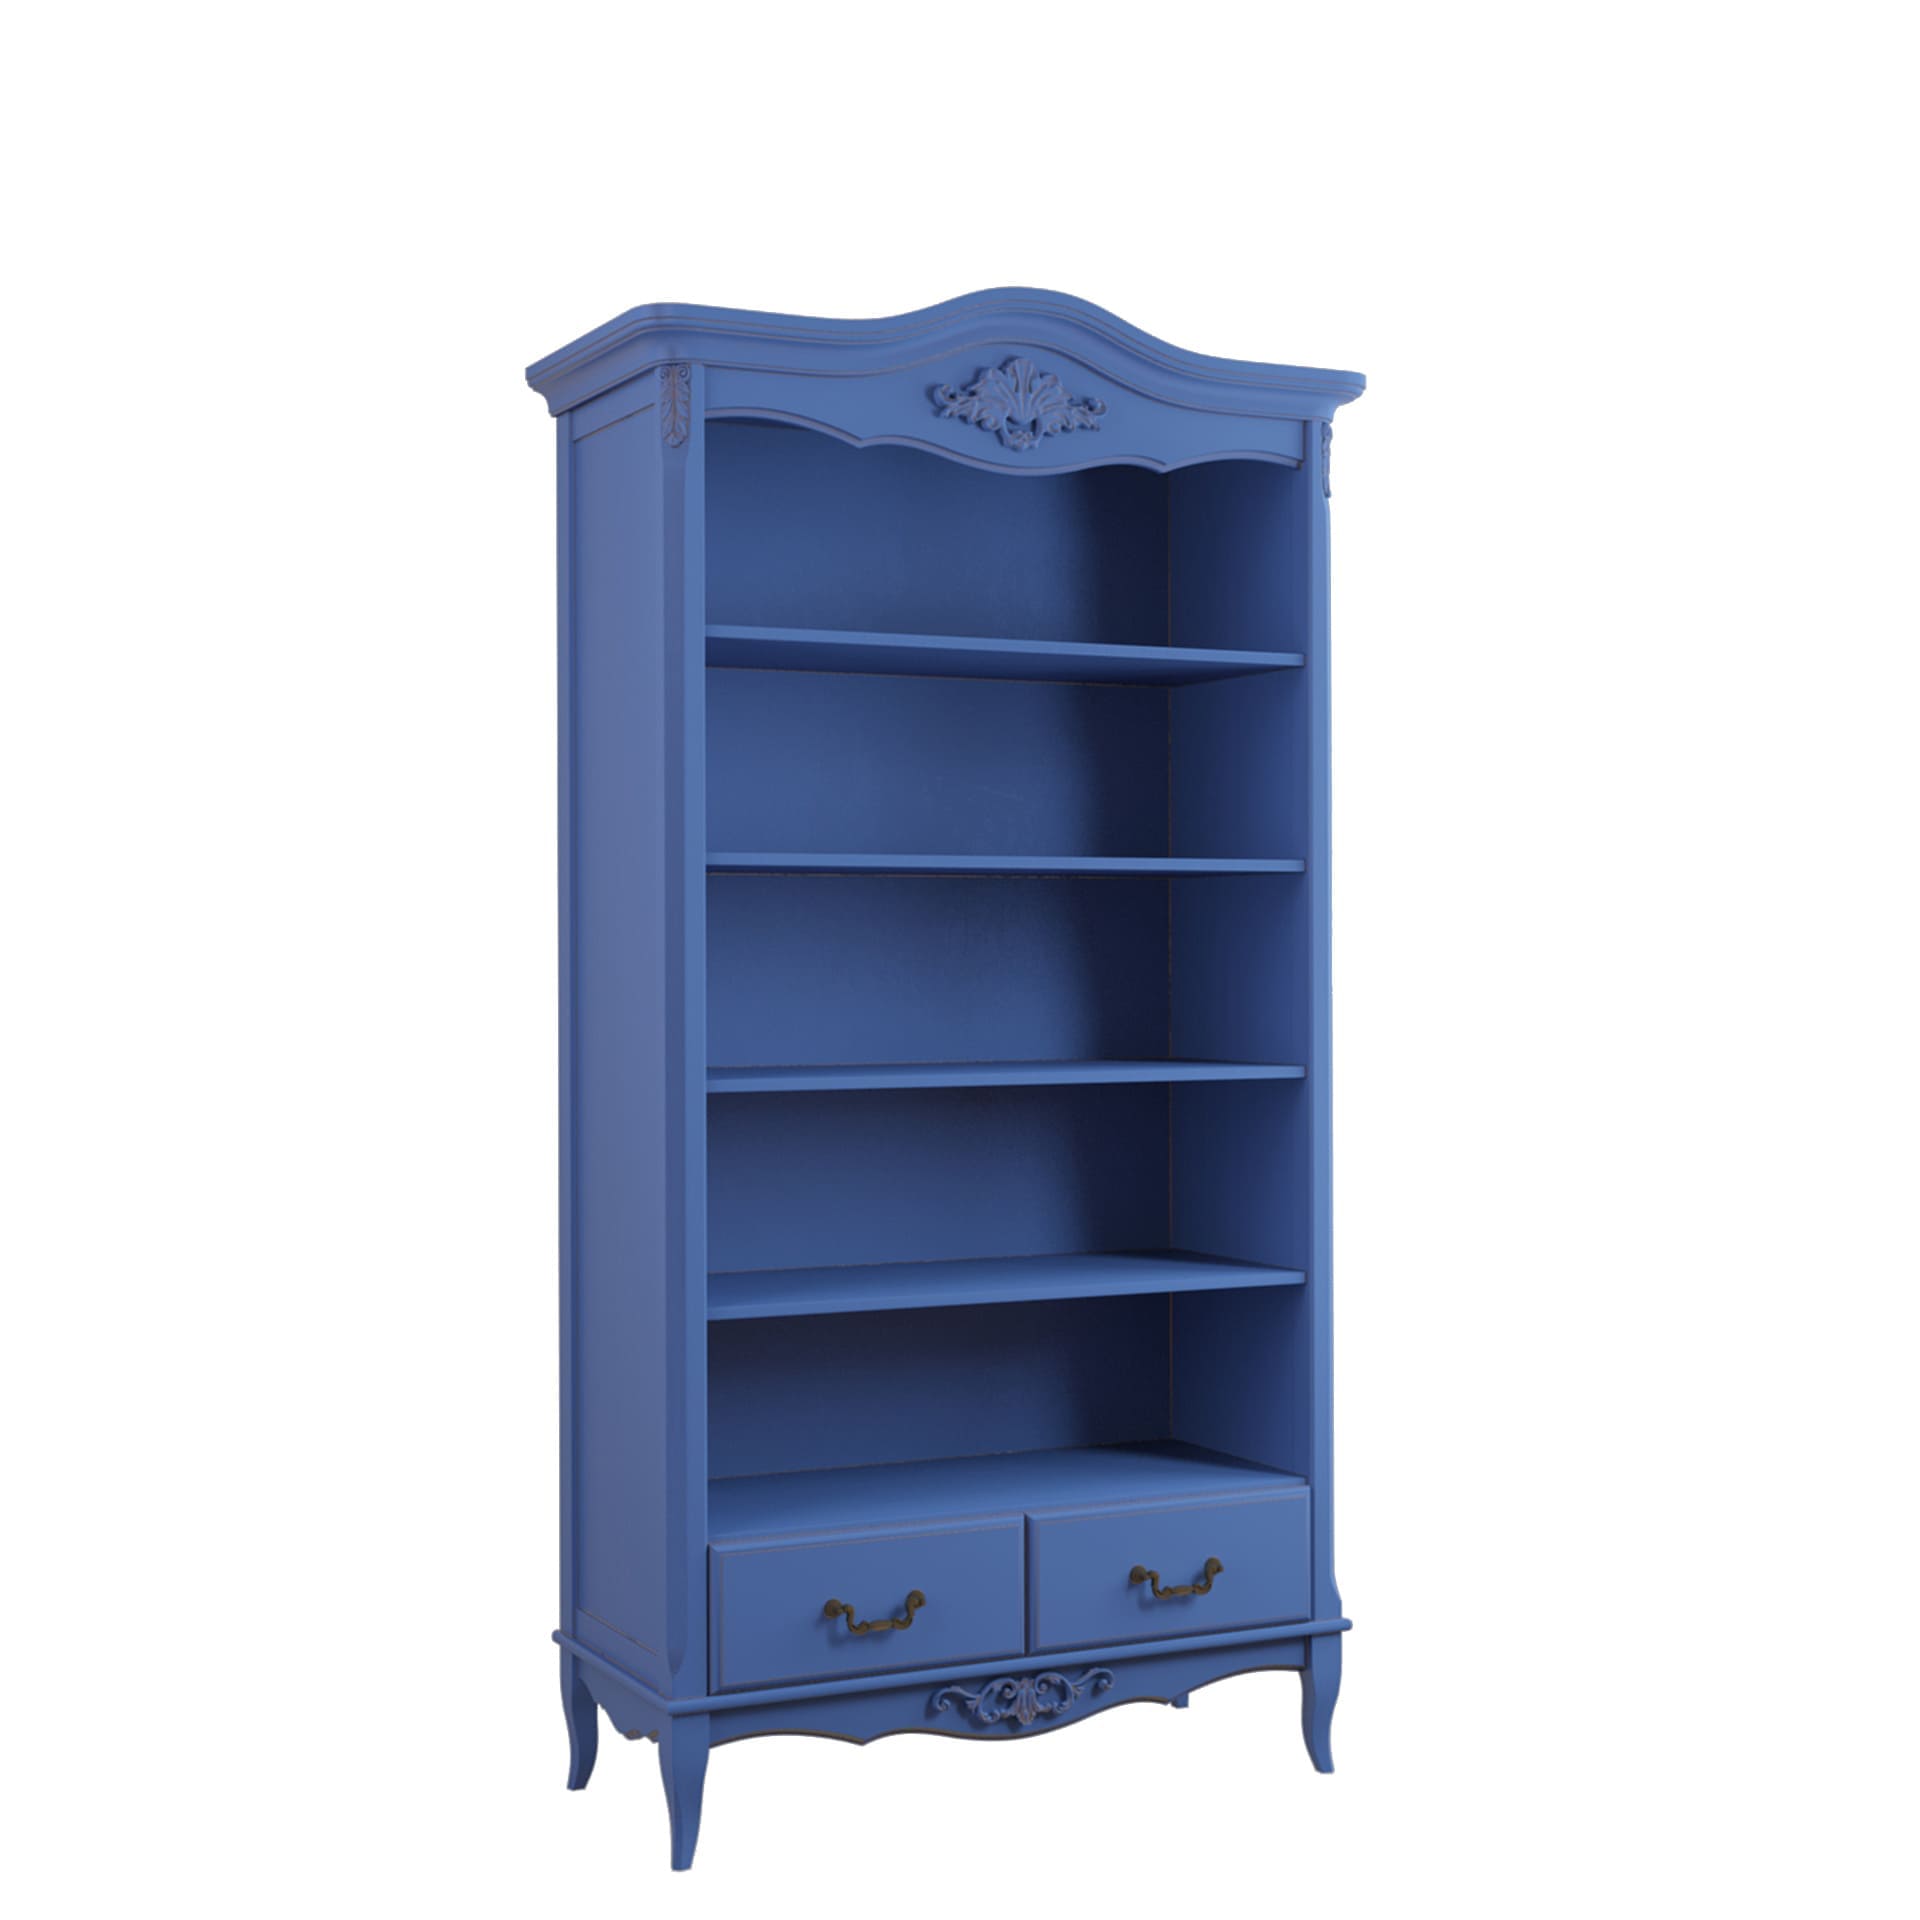 Стеллаж Aletan Provence, широкий, цвет: синий 107х42х203 см (B606IN)B606IN